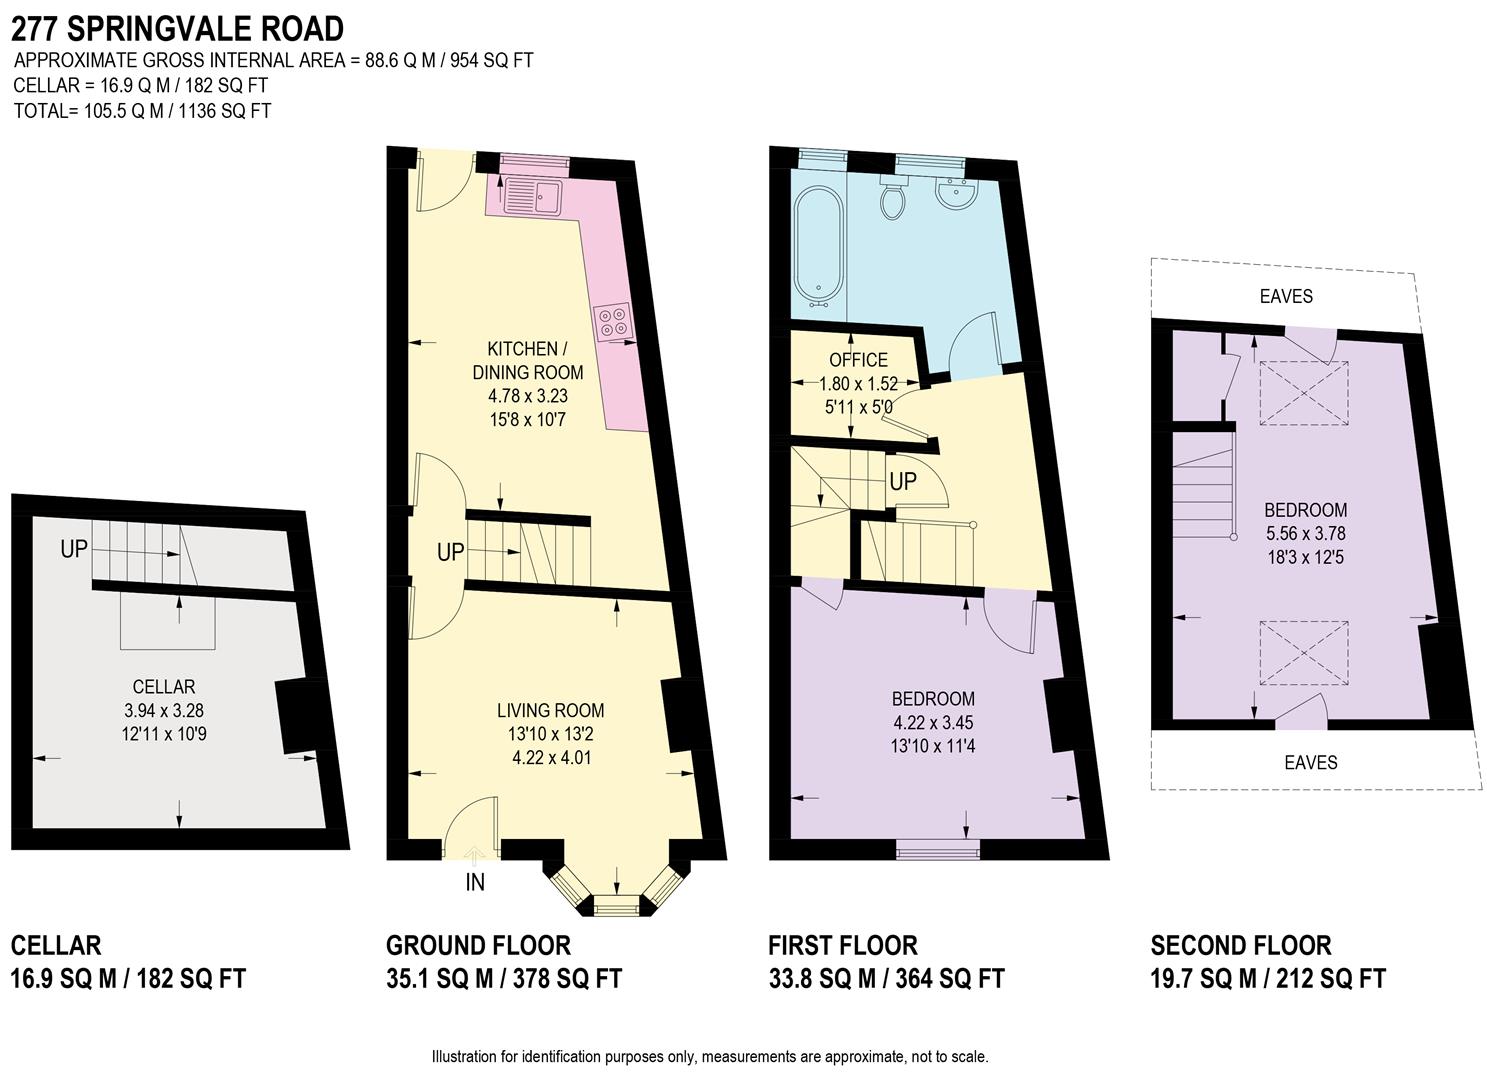 277 Springvale Road Floorplan.jpg